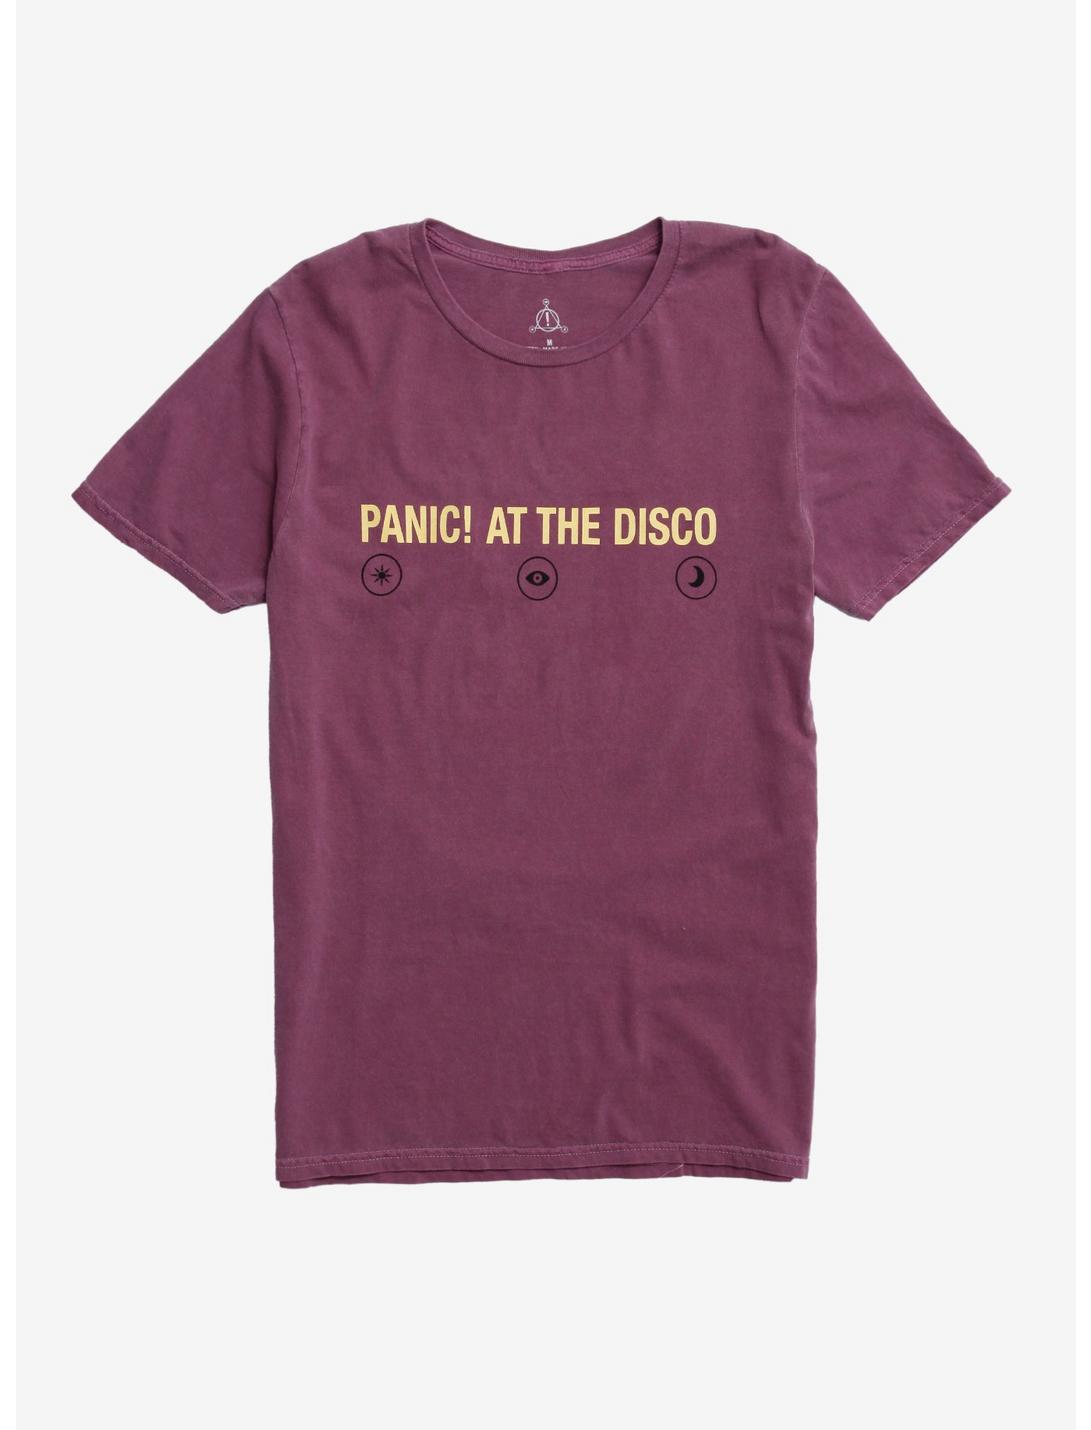 Panic! At The Disco Beebo T-Shirt, PURPLE, hi-res